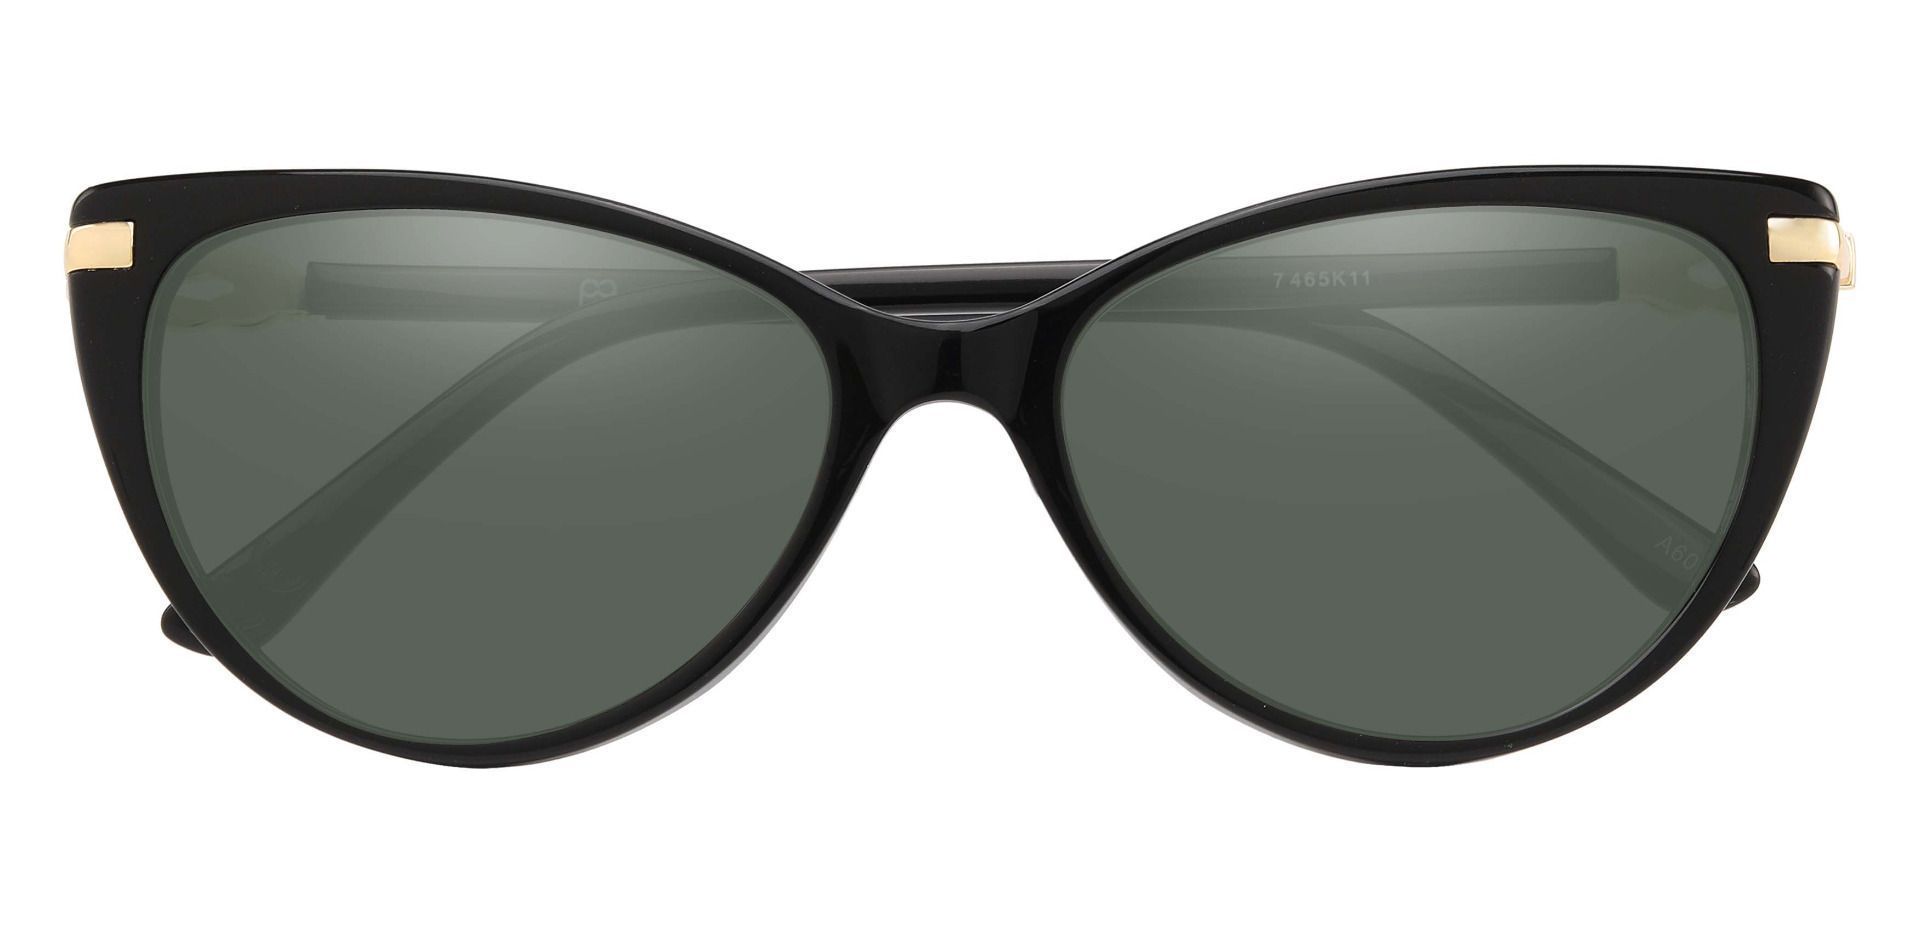 Starla Cat Eye Progressive Sunglasses - Black Frame With Green Lenses